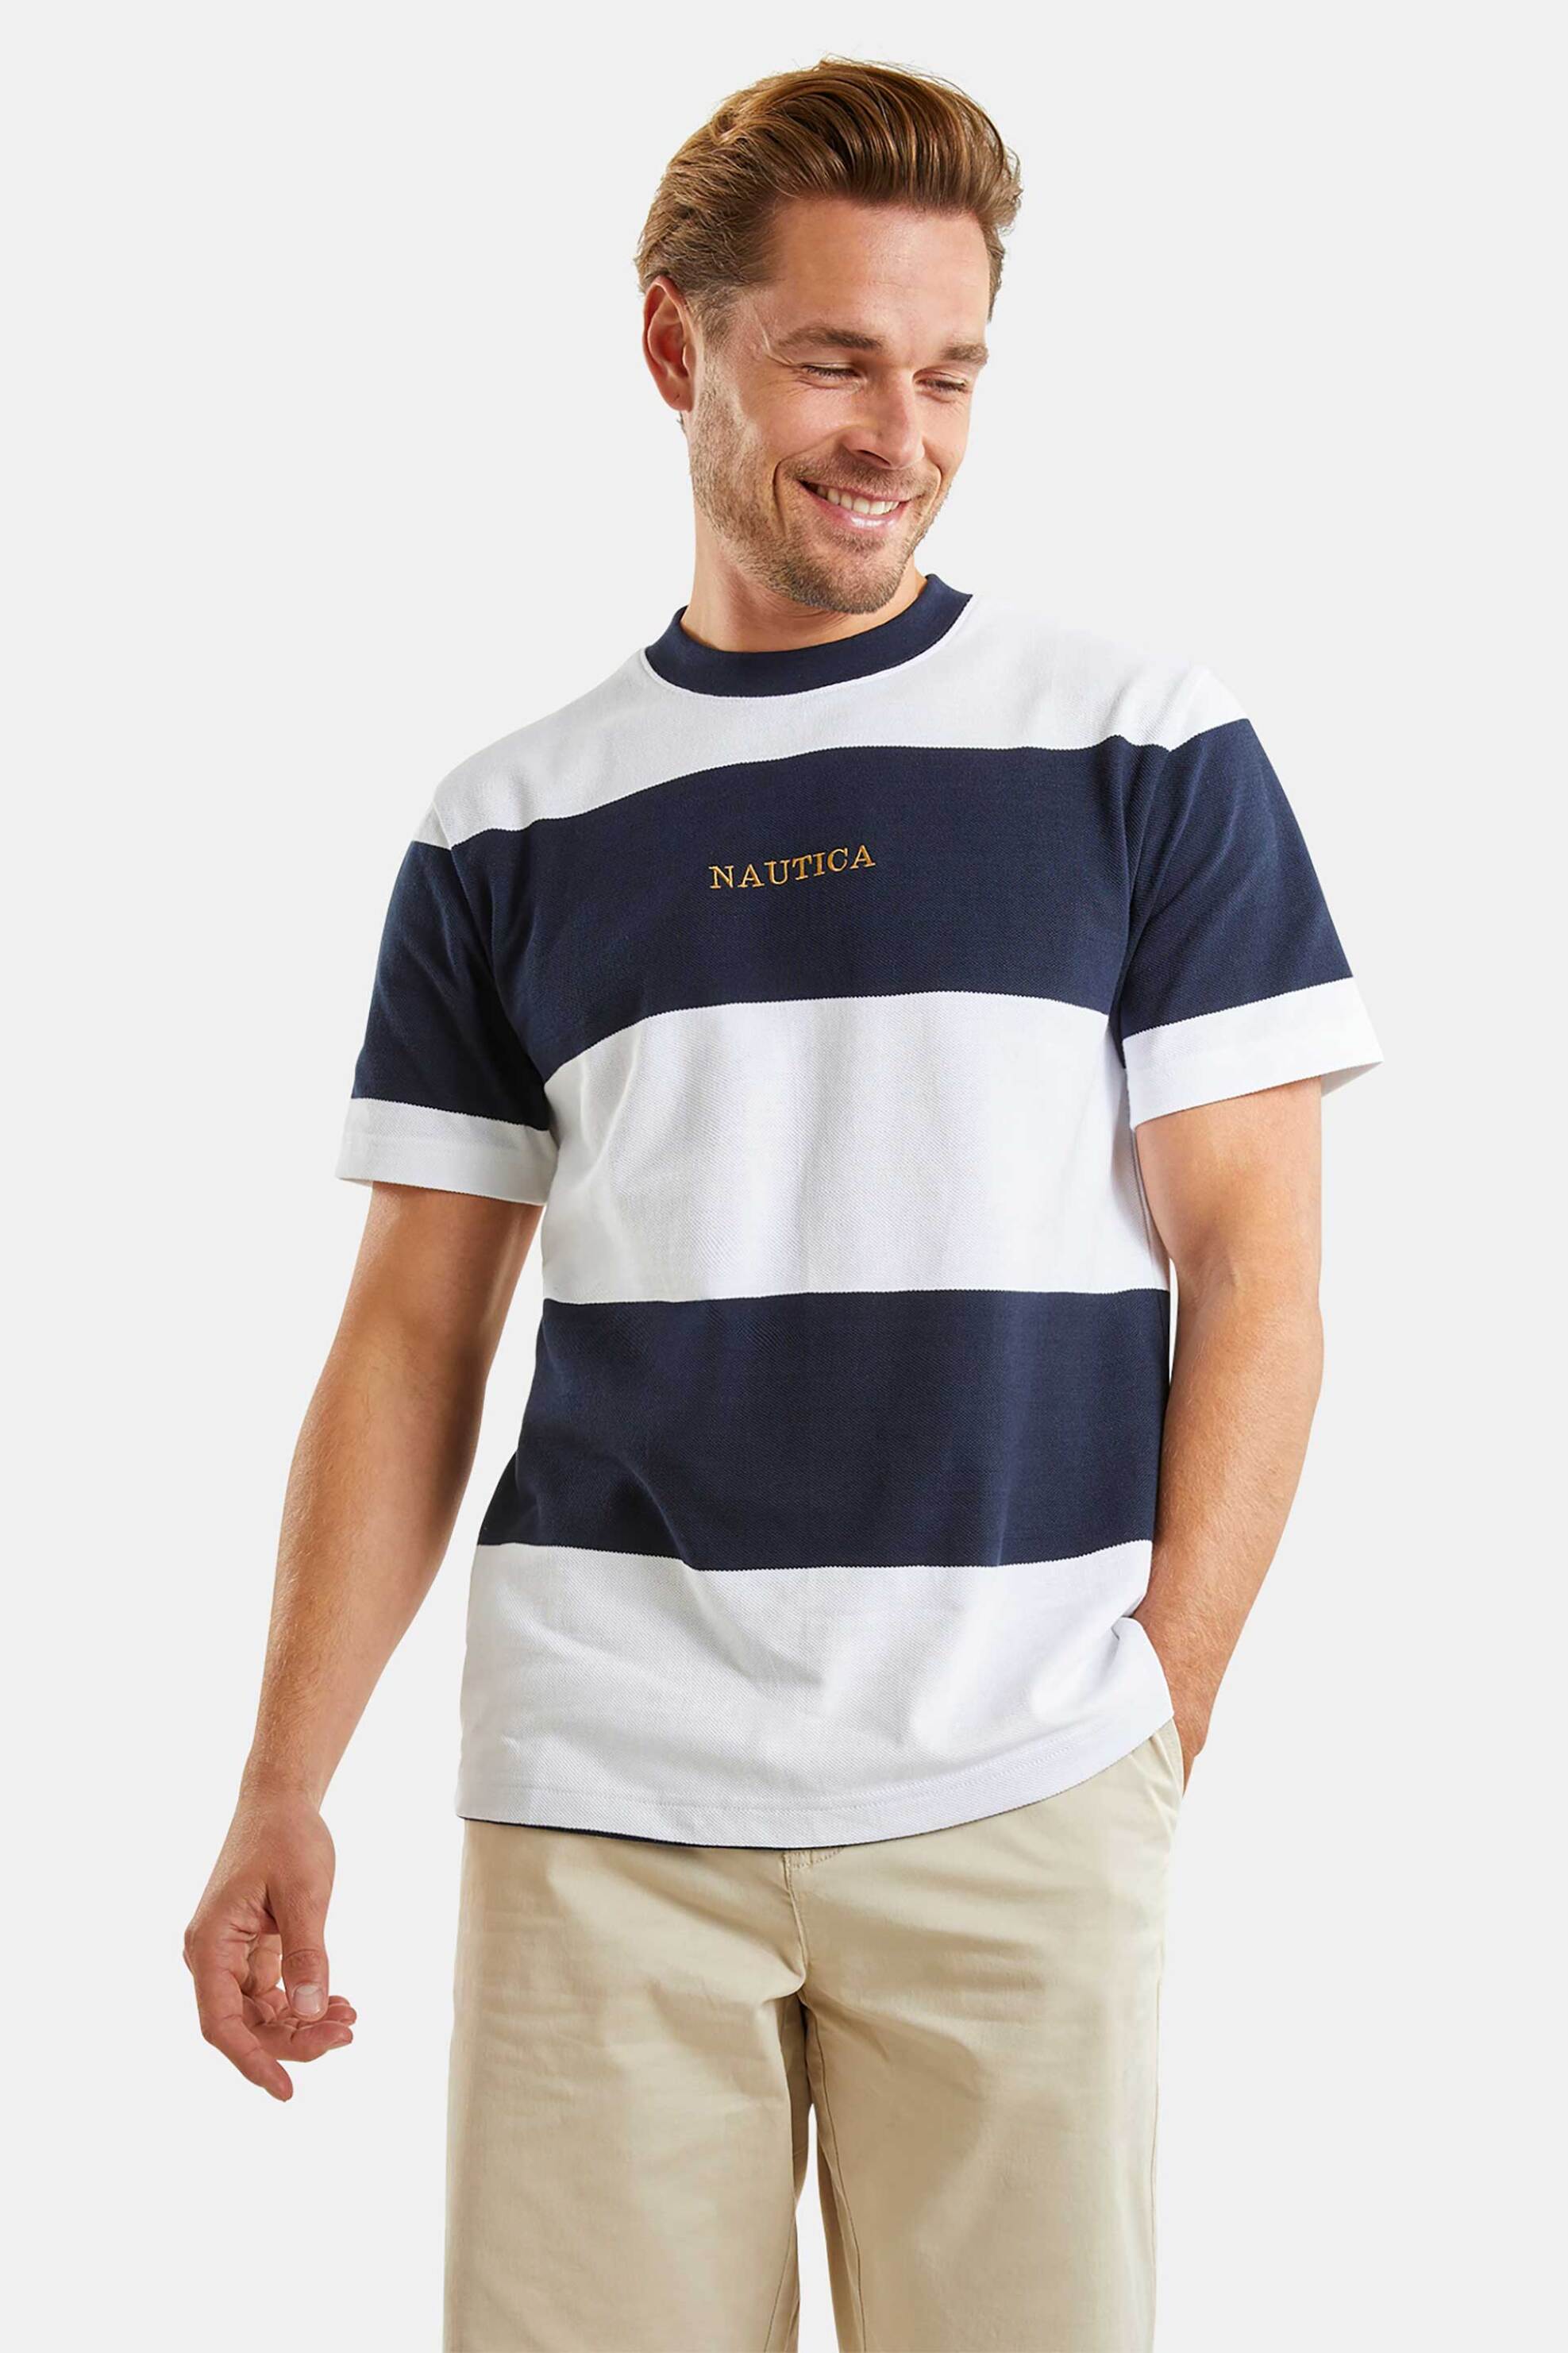 Ανδρική Μόδα > Ανδρικά Ρούχα > Ανδρικές Μπλούζες > Ανδρικά T-Shirts Nautica ανδρικό T-shirt με ριγέ σχέδιο και λογότυπο - N1M01722 Λευκό